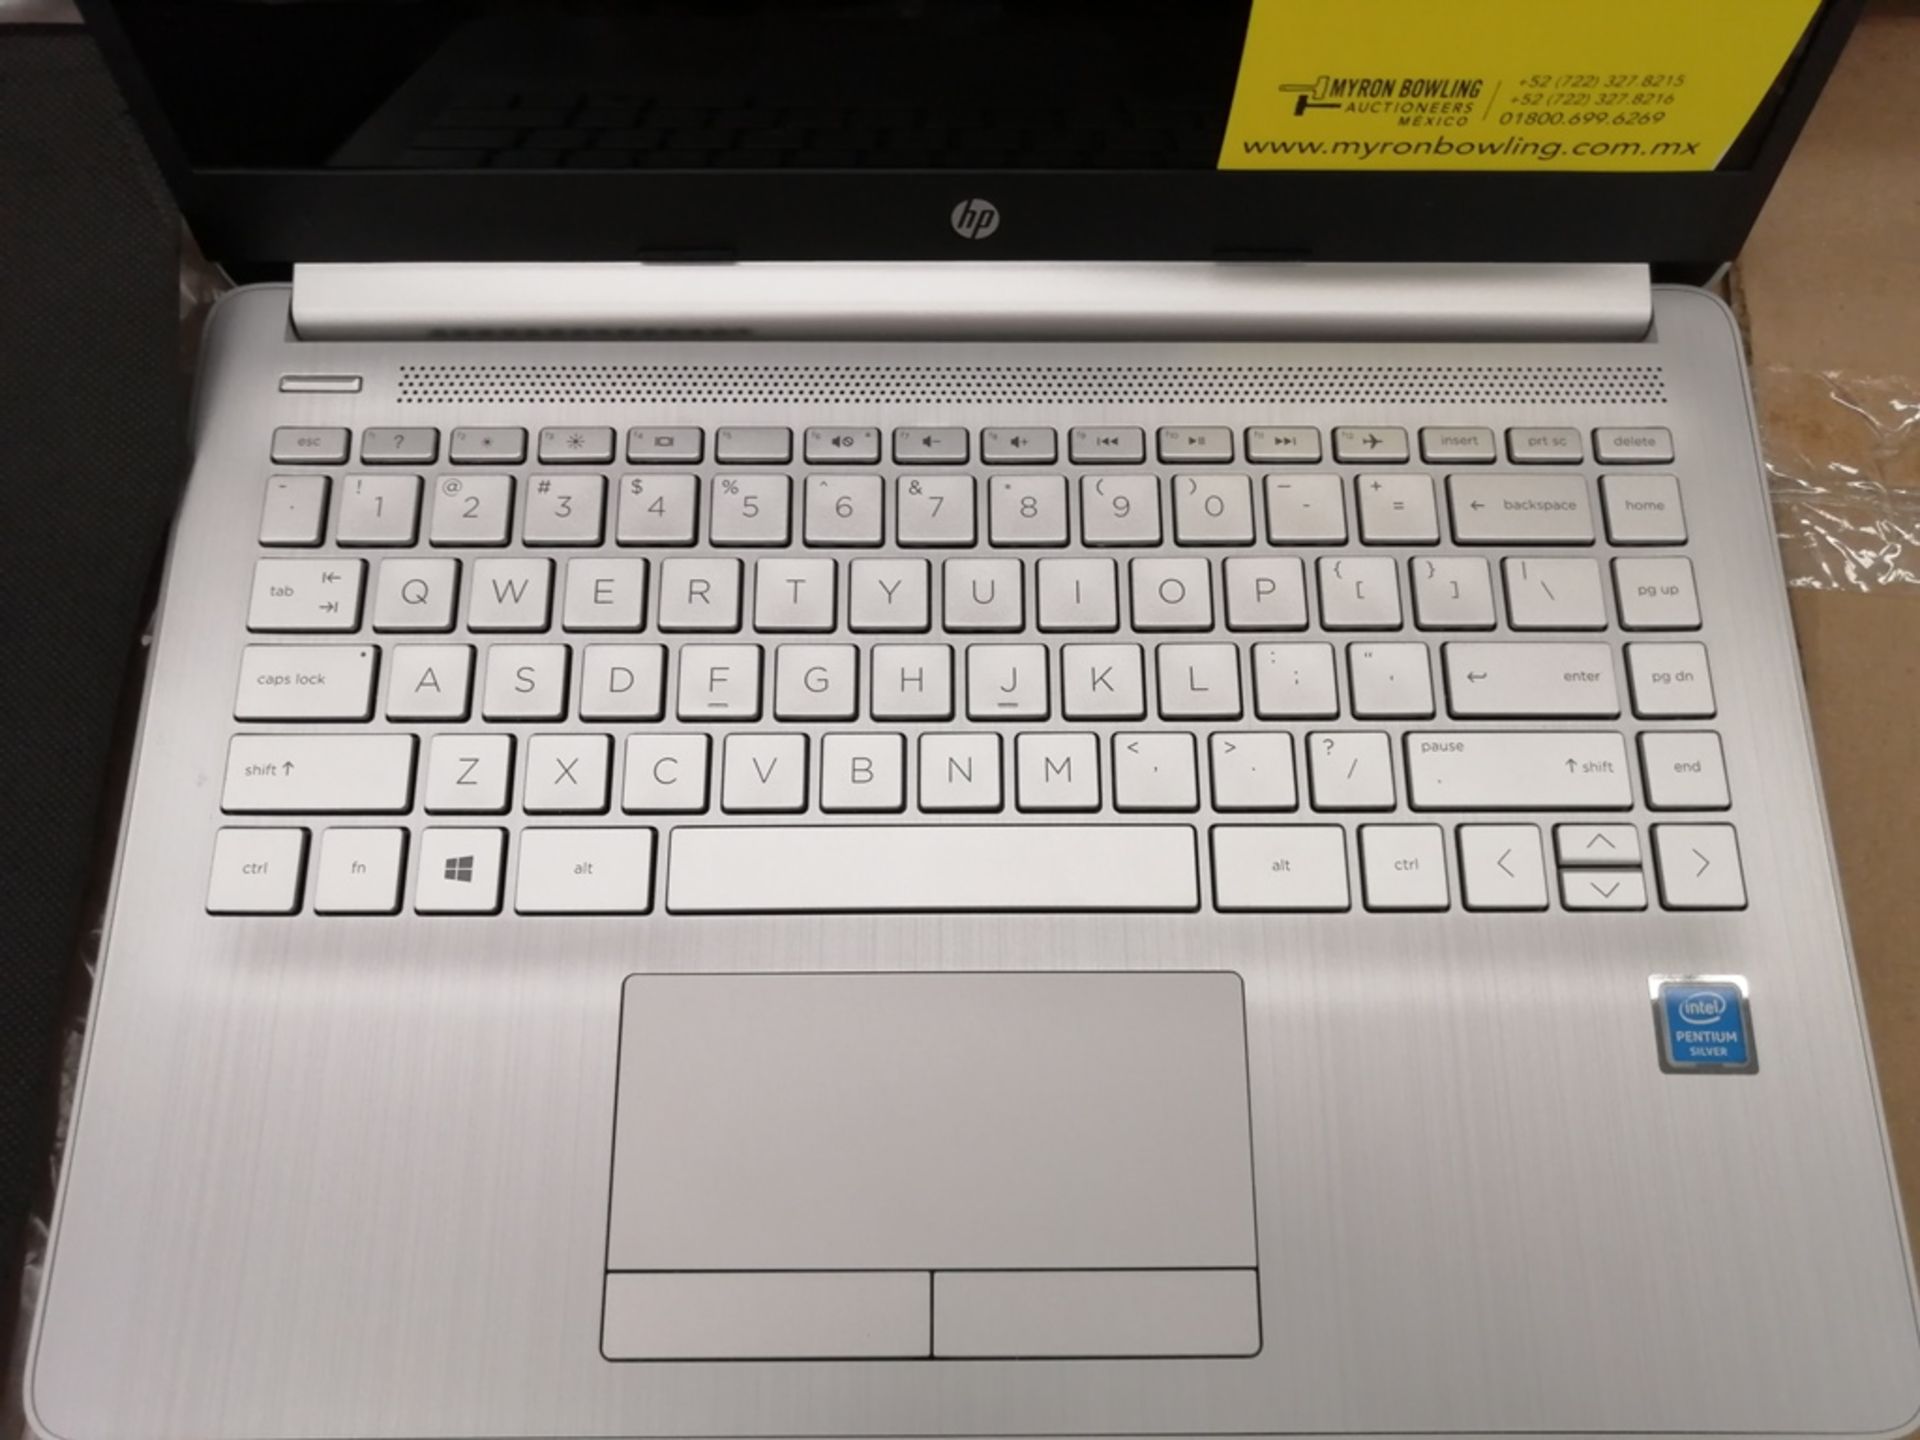 Lote de artículos contiene: 1 Computadora tipo Laptop marca HP, modelo 14CF2033, serie 5CG1206WQM, - Image 6 of 26